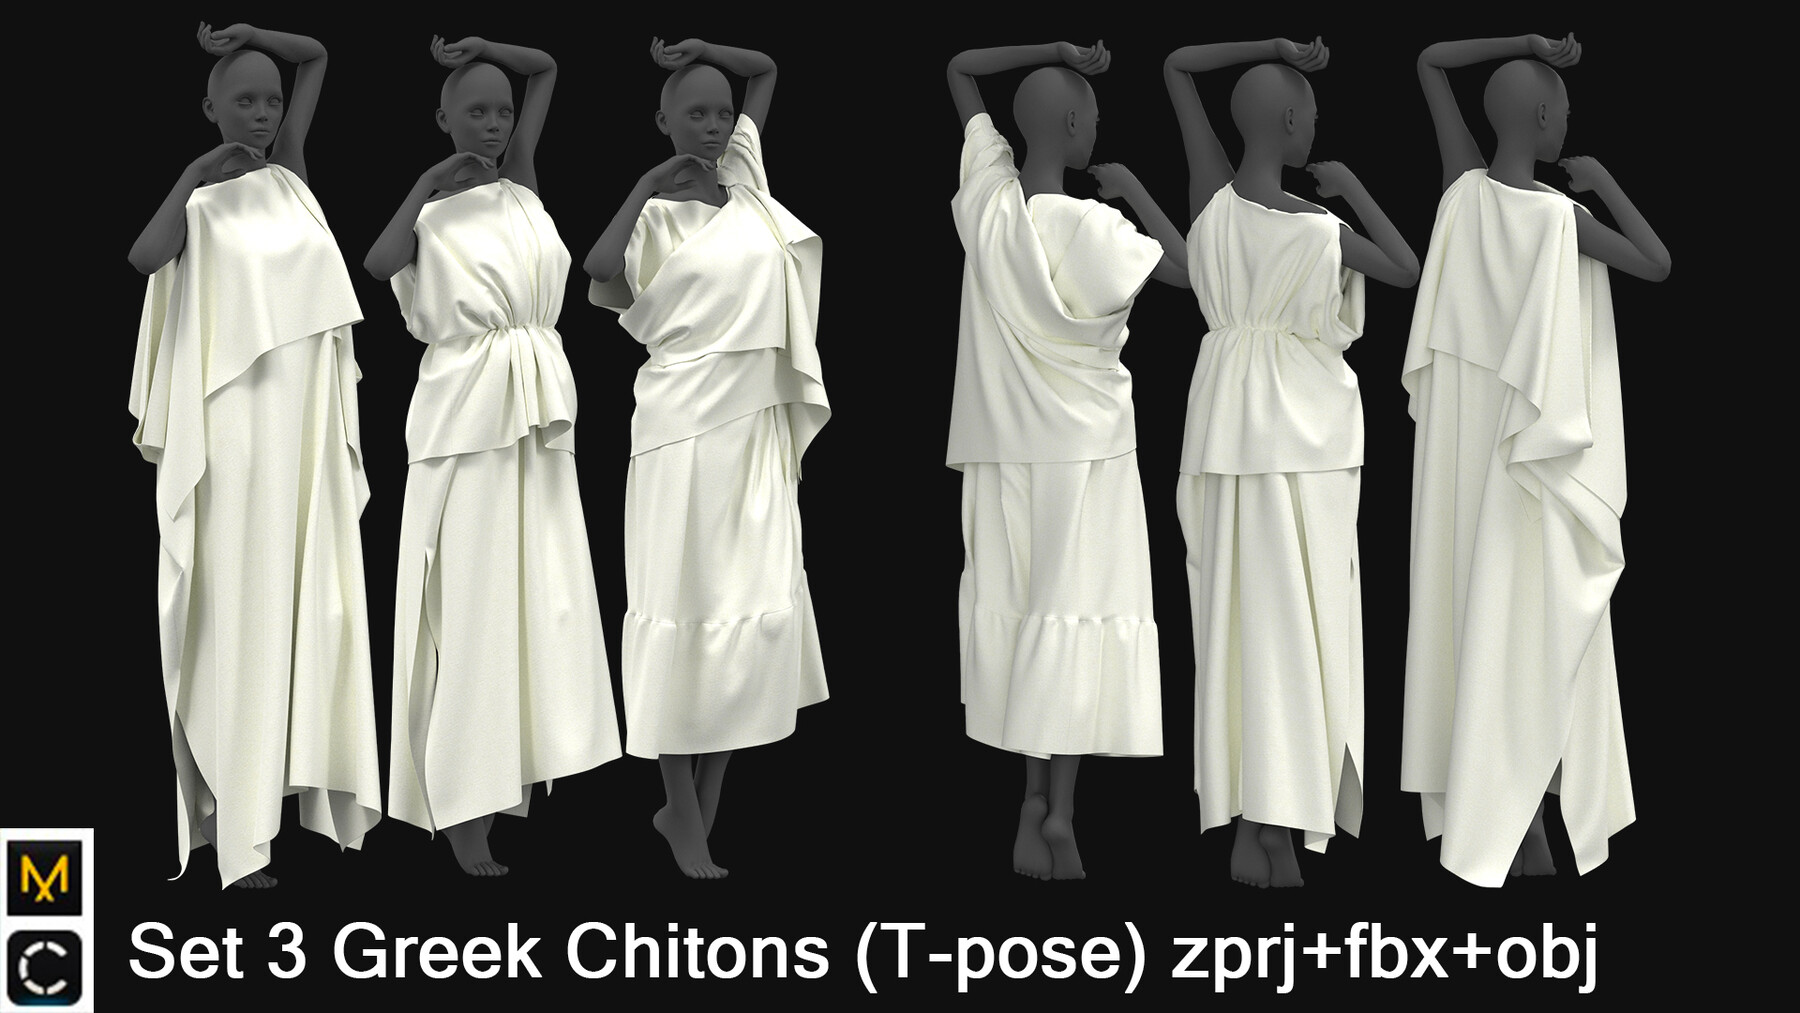 chiton dress